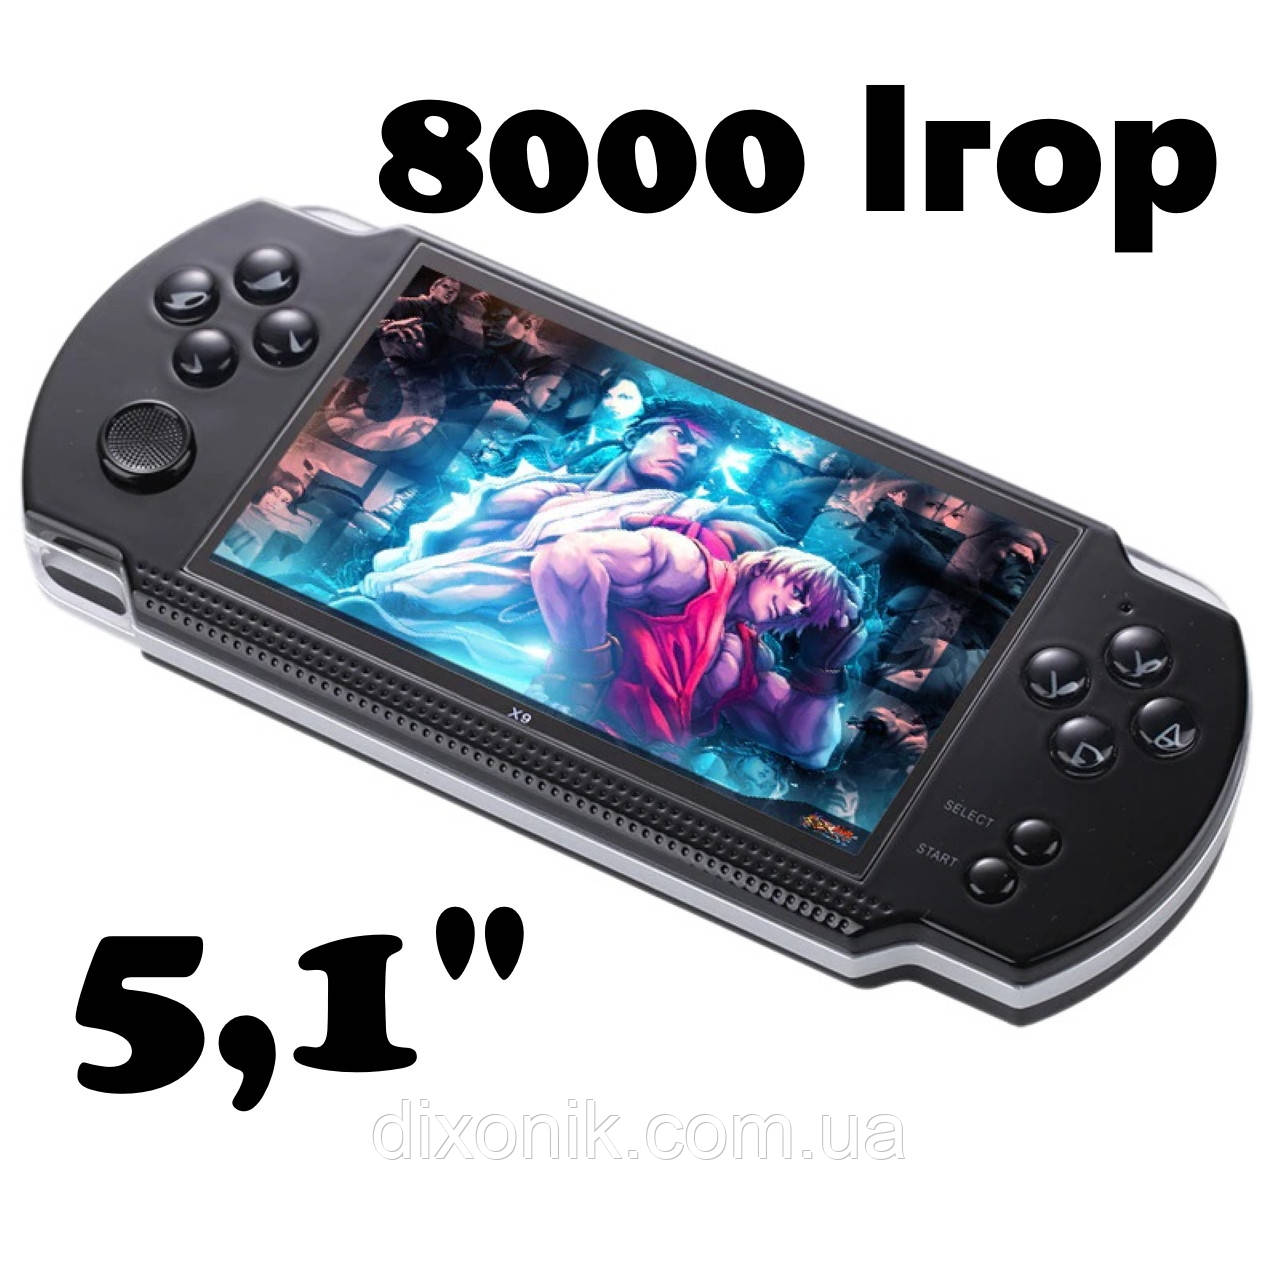 Мощная игровая консоль PSP X9 Mp5 5,1" 8Гб детская игровая приставка ПСП с  большим экраном, цена 1125 грн - Prom.ua (ID#1426781227)